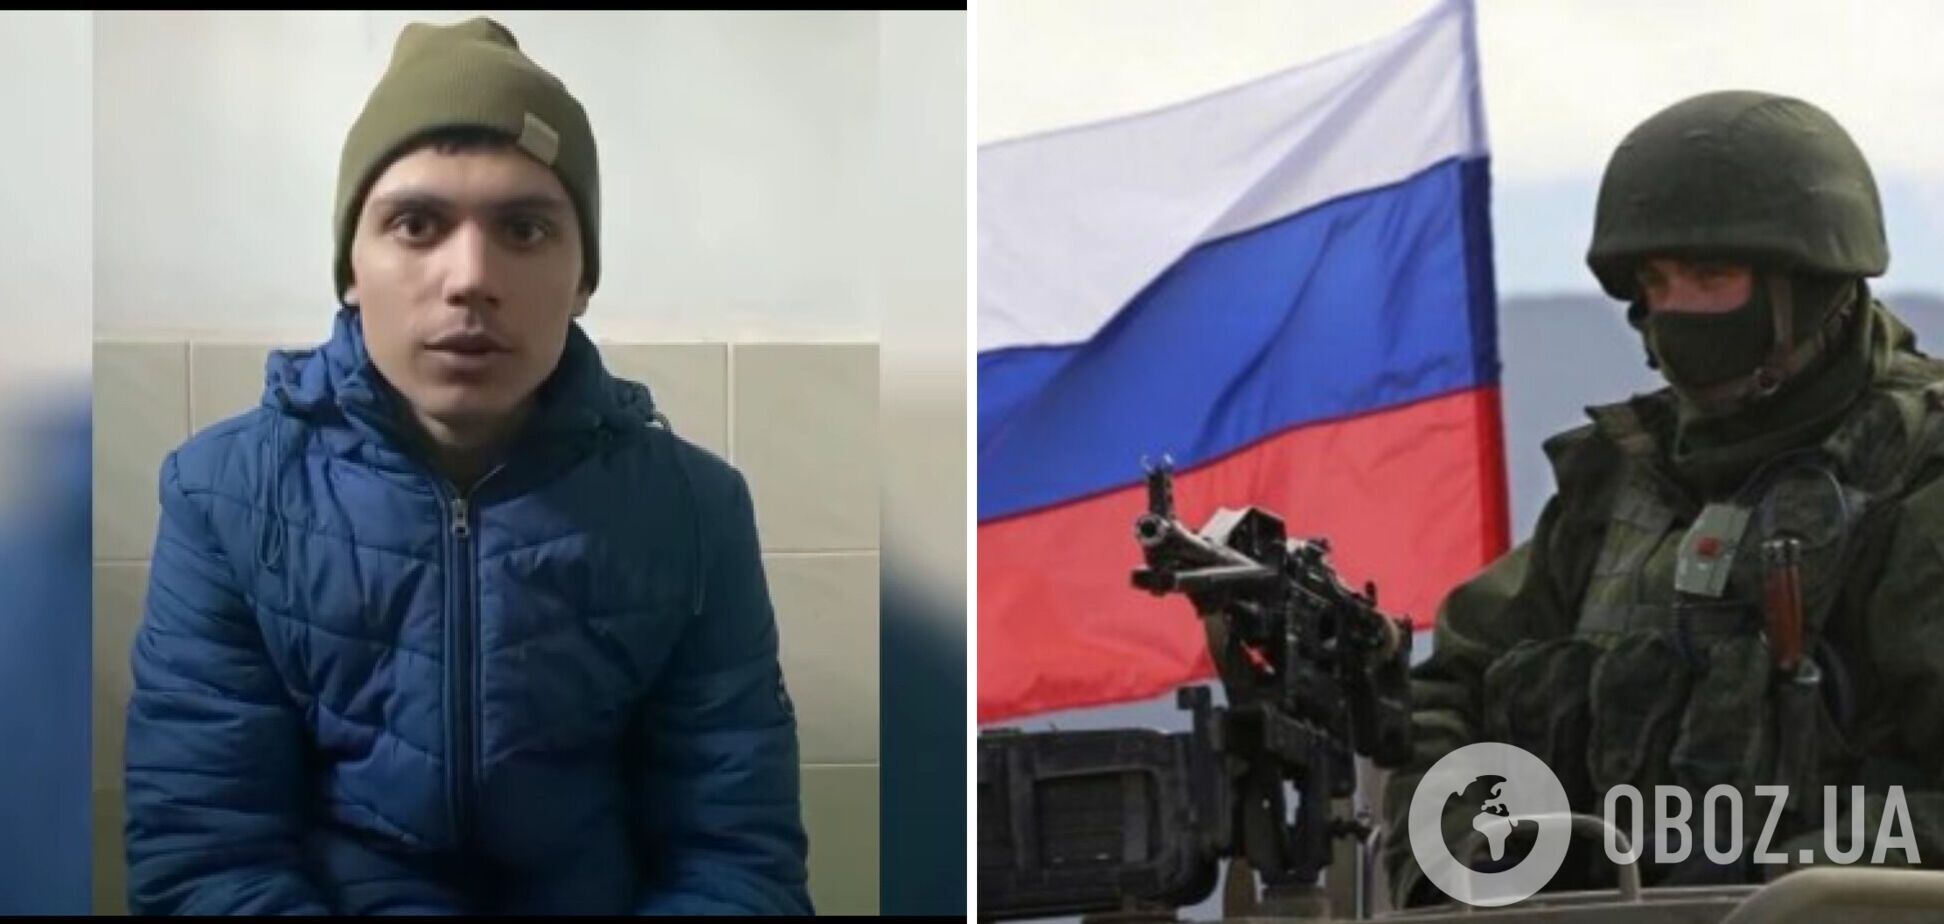 Російський окупант розповів про звірства армії Путіна в Україні: по ньому відкрили вогонь свої ж. Відео